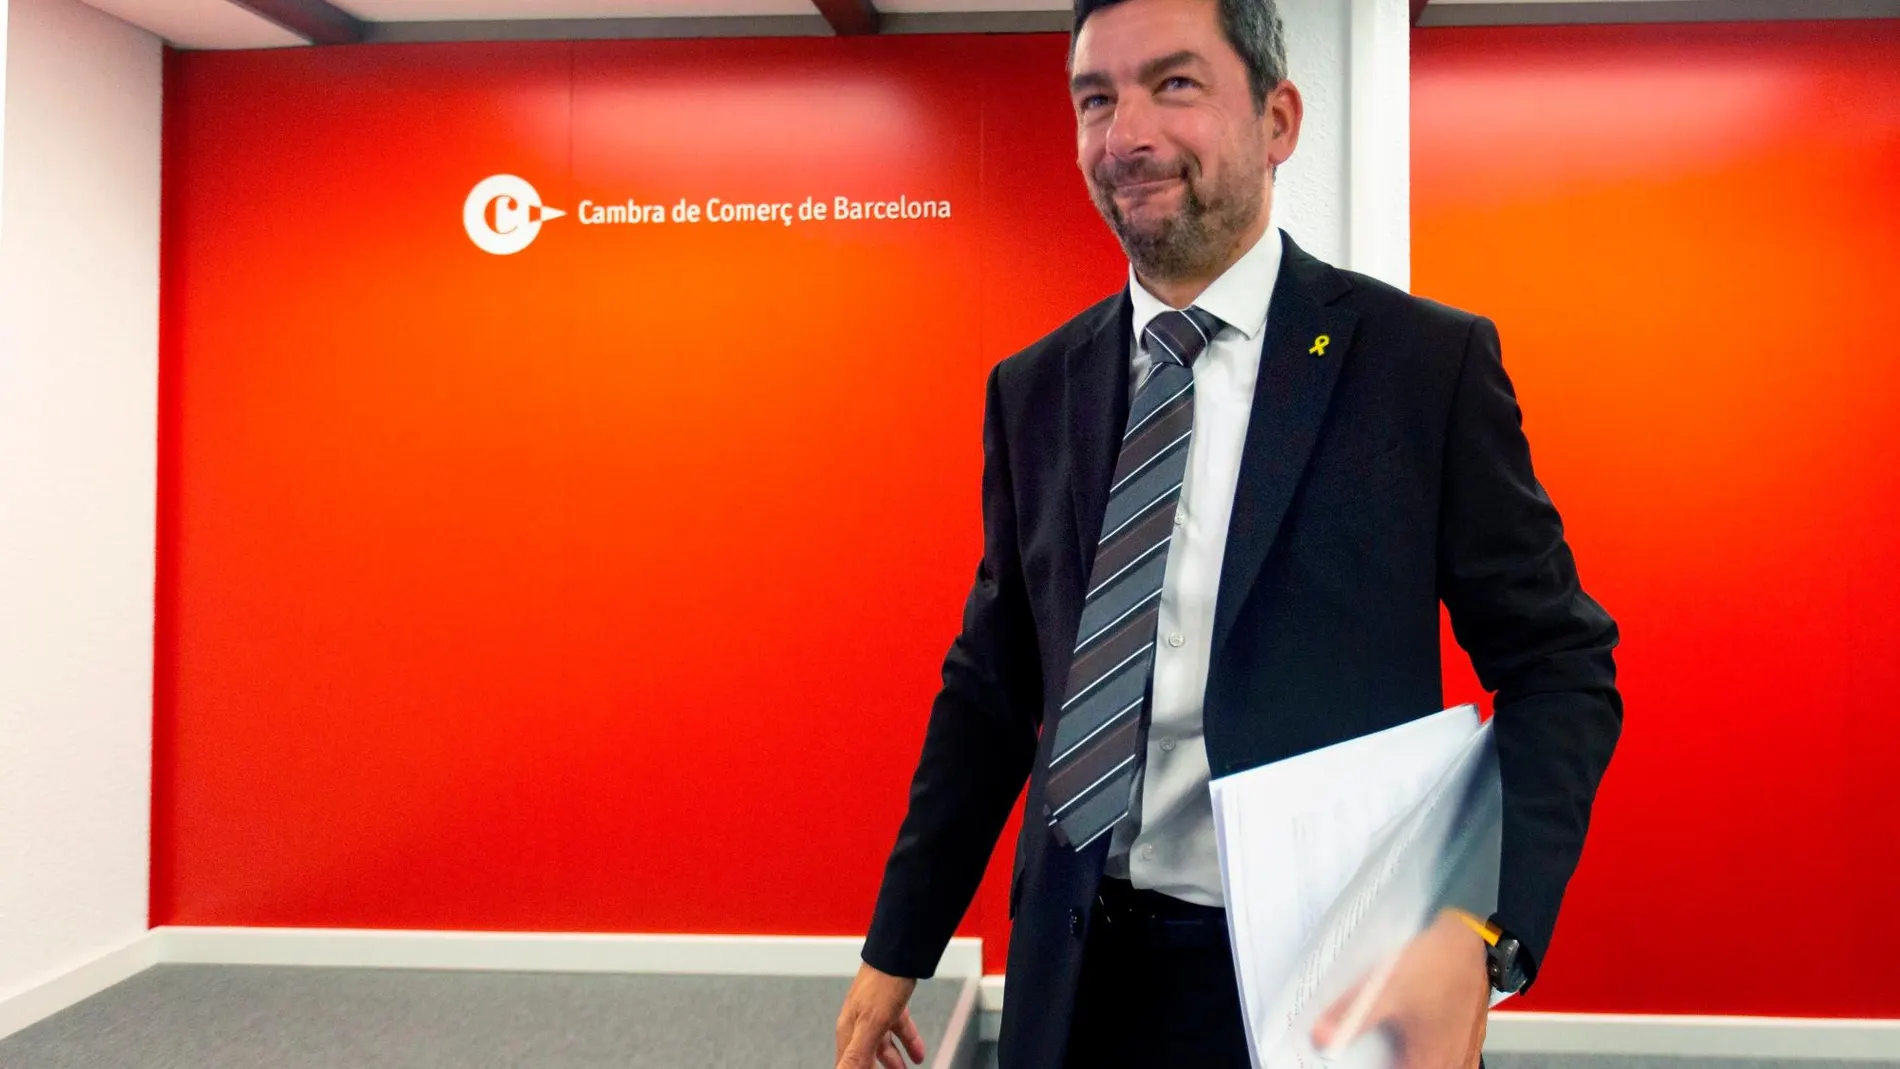 El nuevo presidente de la Cámara de Comercio de Barcelona, Joan Canadell, durante la rueda de prensa en la que ha presentado un estudio monográfico comparativo entre la inversión extranjera directa en Cataluña en comparación con la Comunidad de Madrid y el resto del estado a lo largo del periodo 2003-2017.